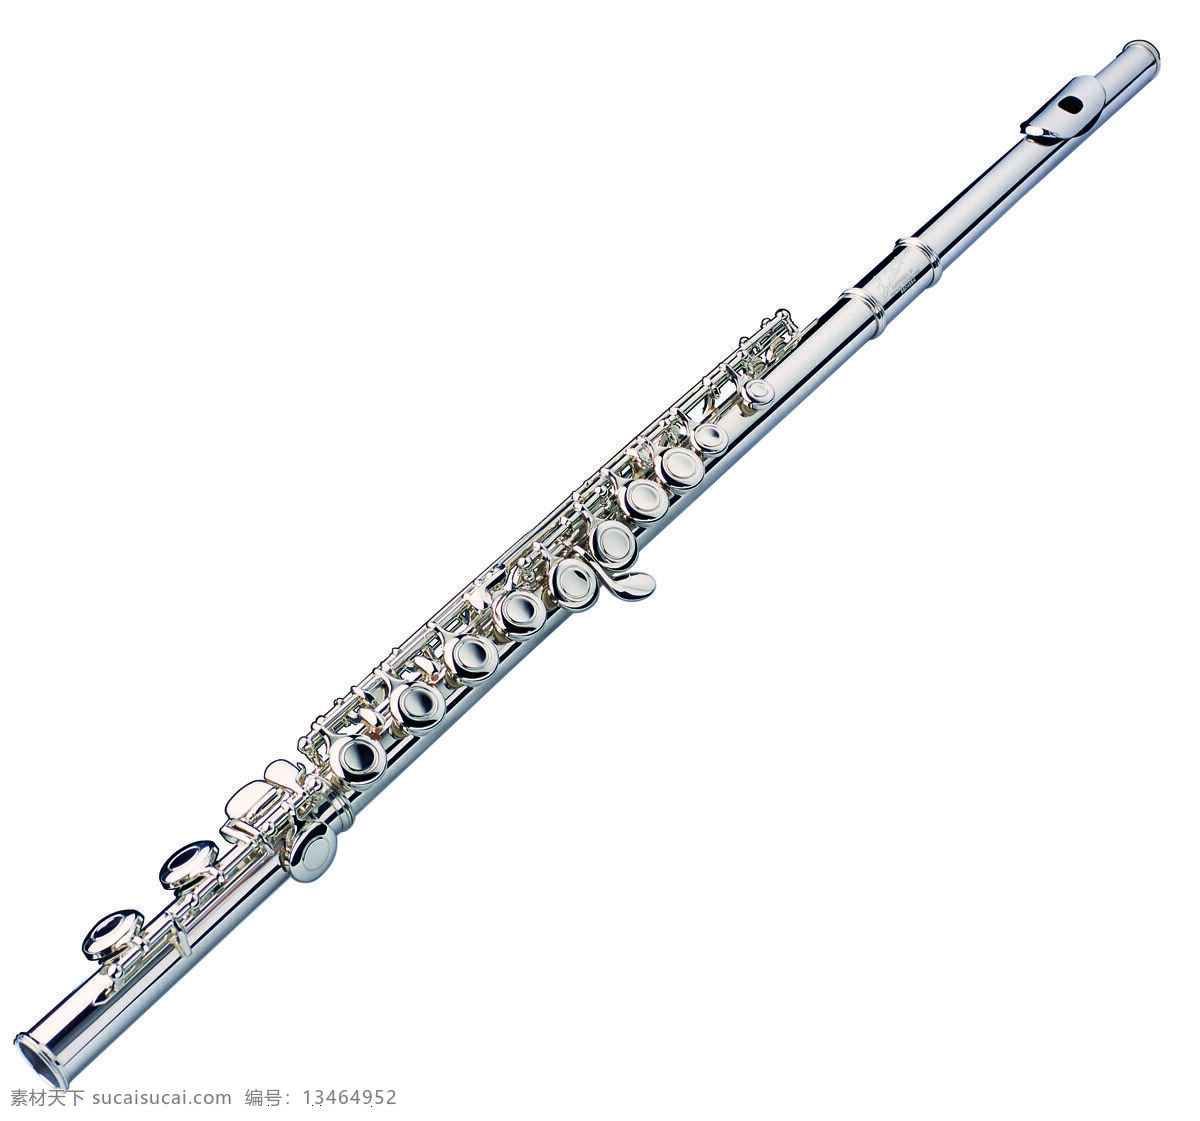 西式乐器 萨克斯 乐器 音乐 演唱 长笛 管笛 演奏 舞蹈音乐 文化艺术 音乐器材 音乐器械